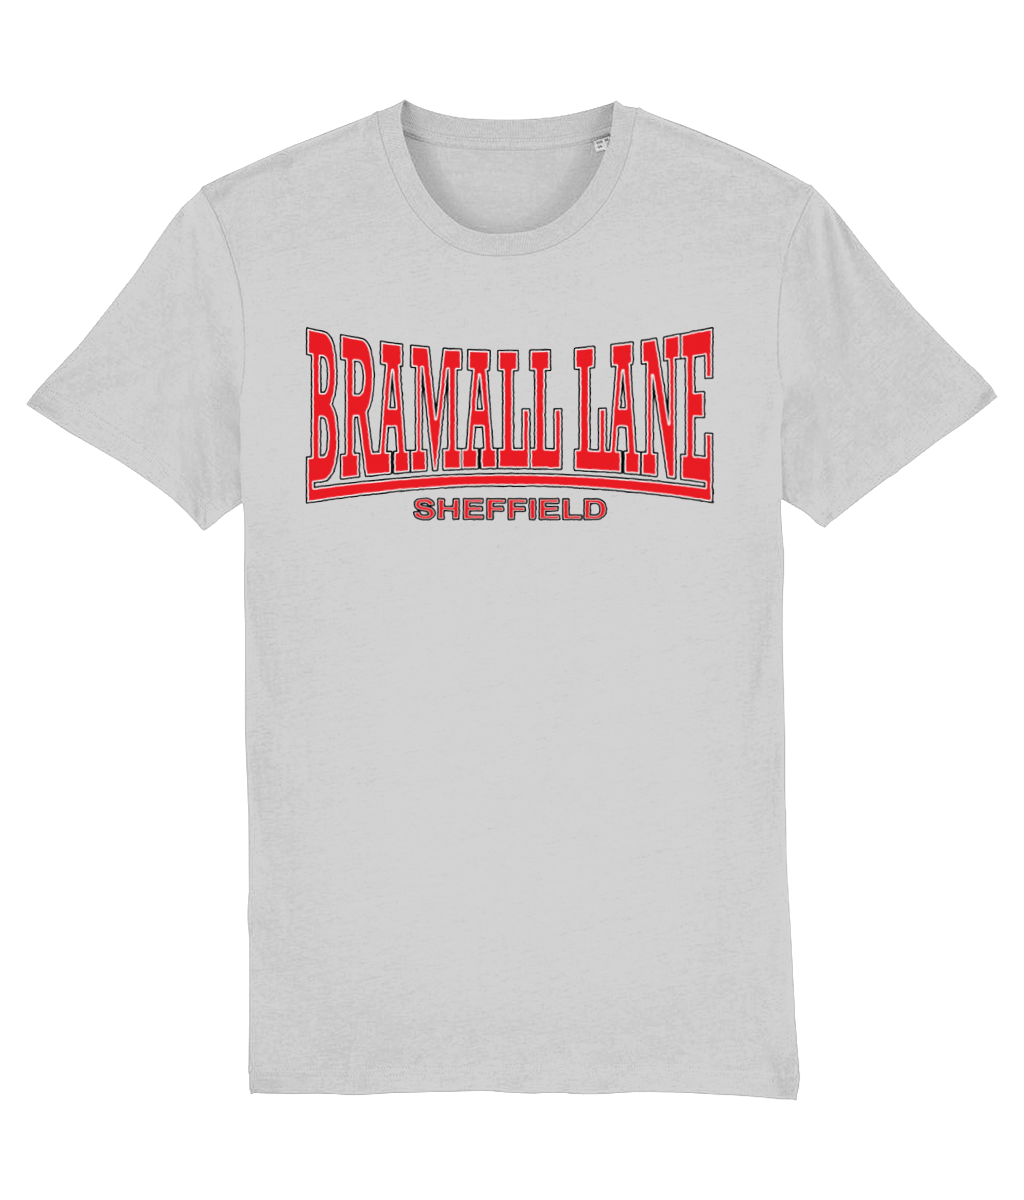 Bramall Lane Tee (Grey)